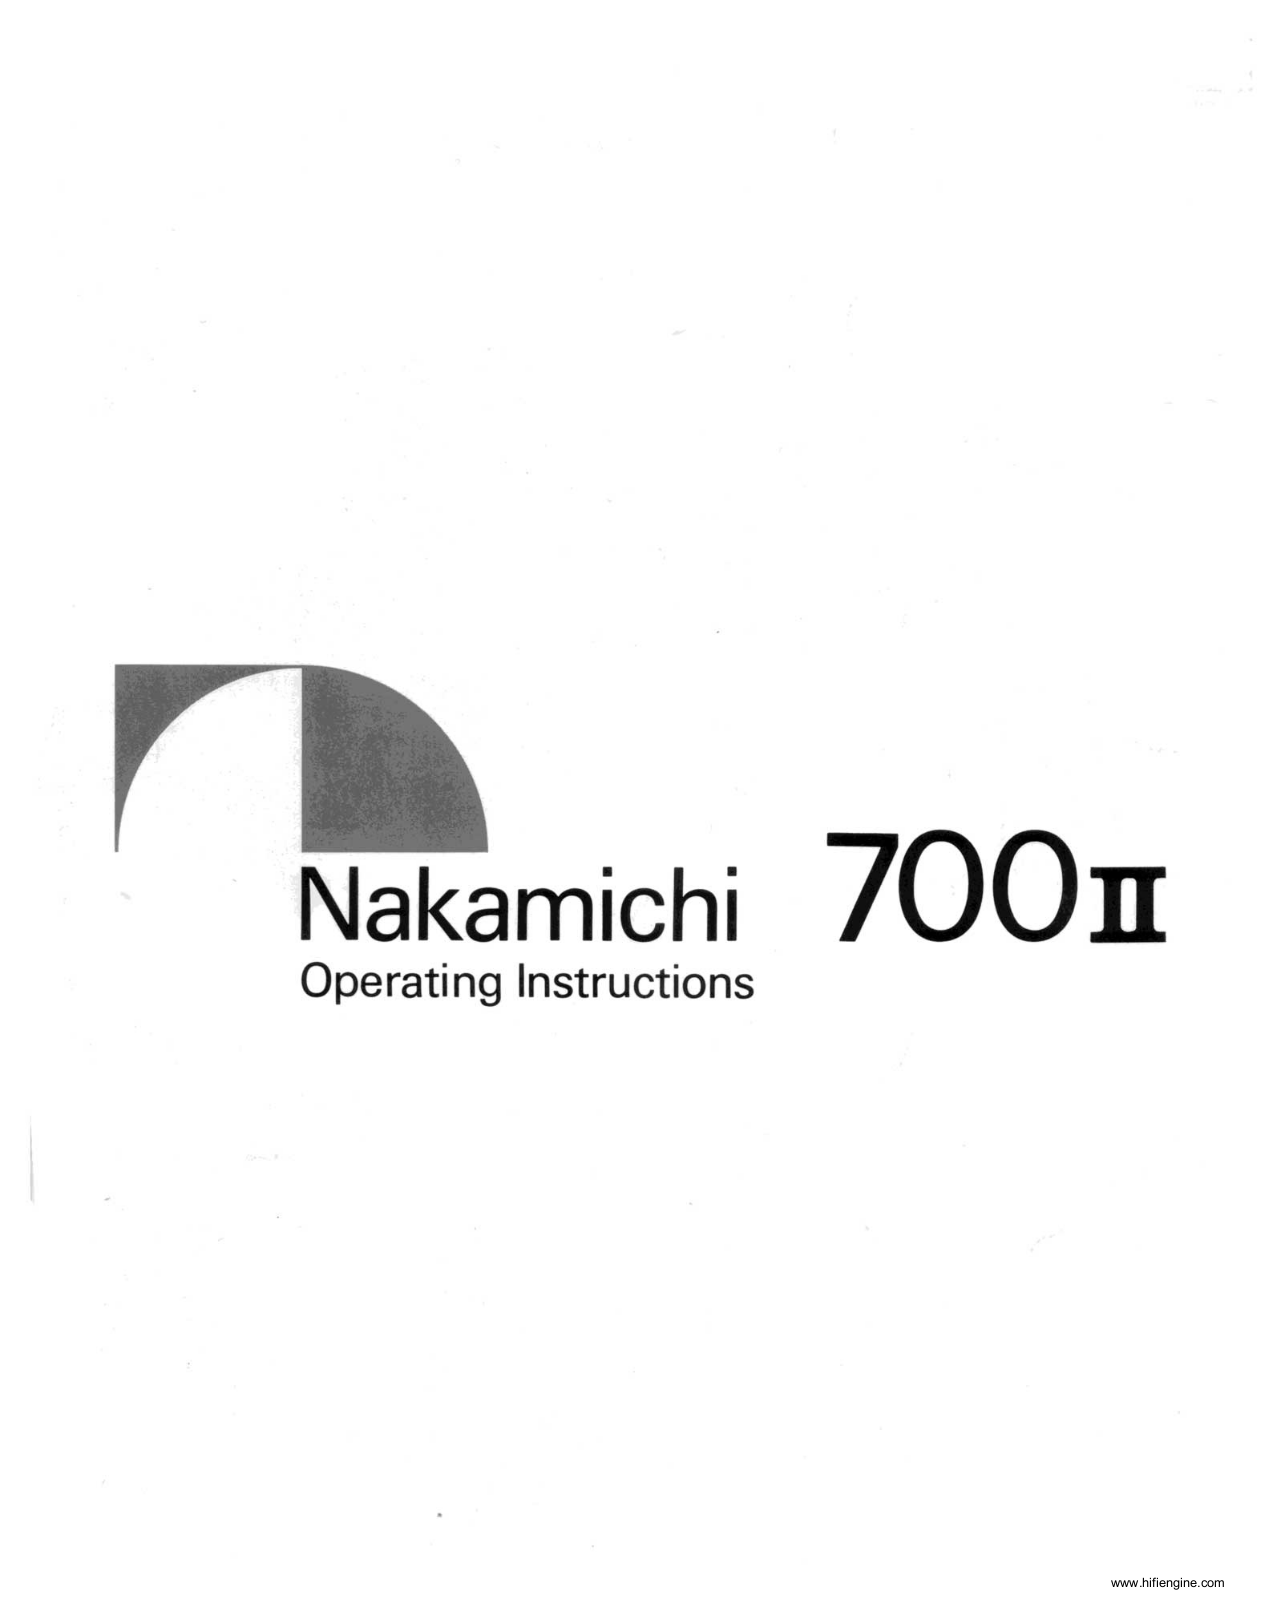 Nakamichi 700-II Owners Manual